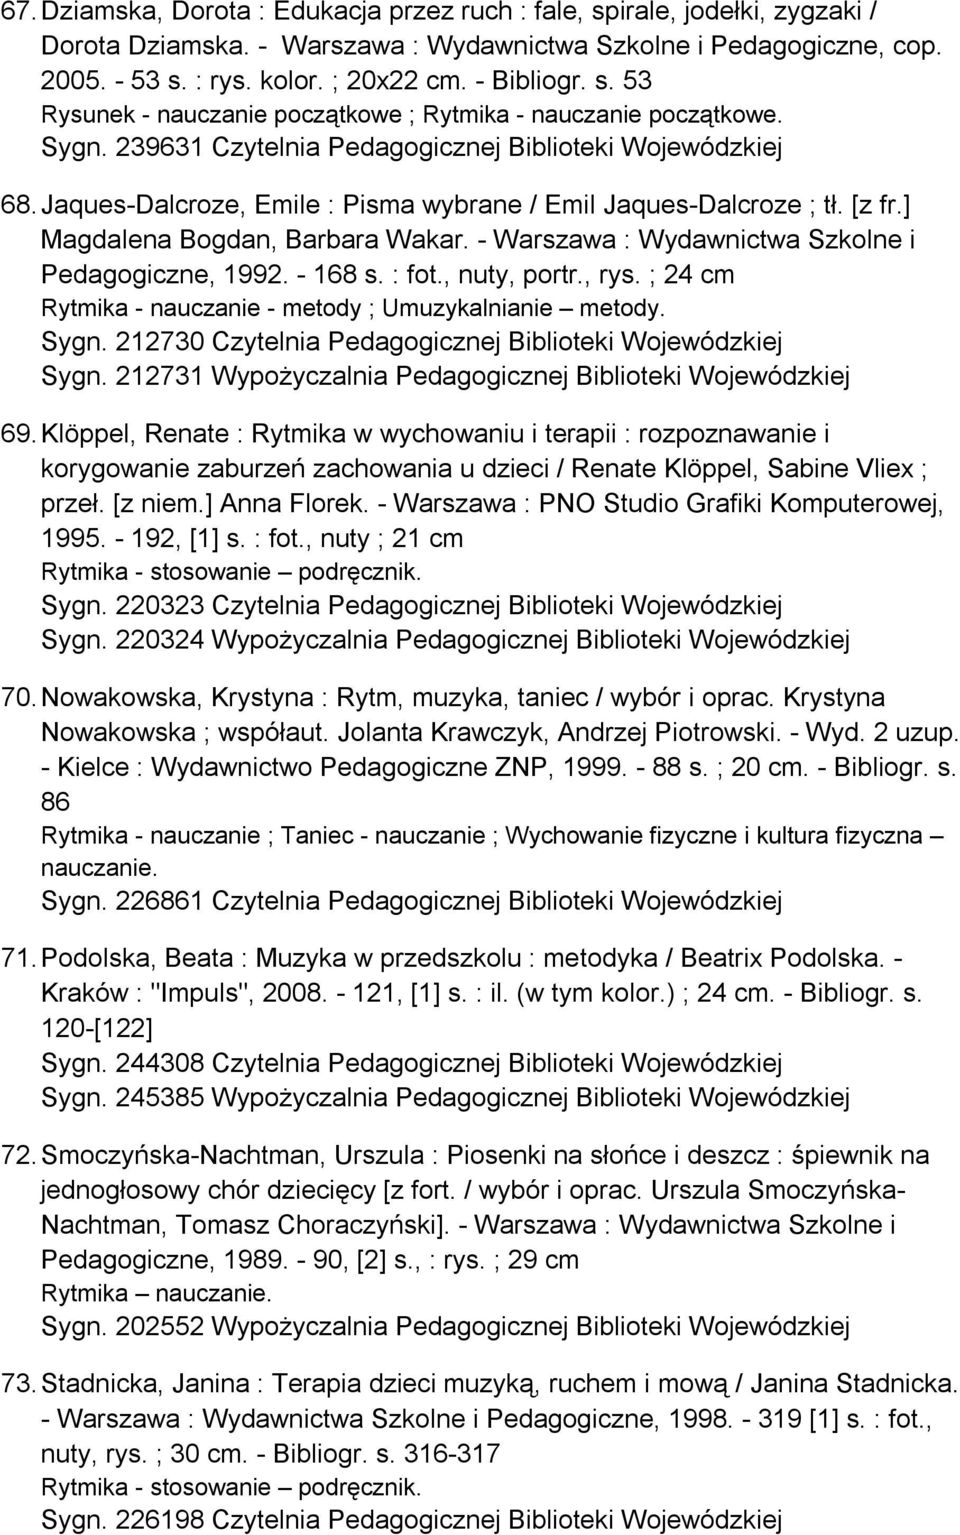 Jaques-Dalcroze, Emile : Pisma wybrane / Emil Jaques-Dalcroze ; tł. [z fr.] Magdalena Bogdan, Barbara Wakar. - Warszawa : Wydawnictwa Szkolne i Pedagogiczne, 1992. - 168 s. : fot., nuty, portr., rys.